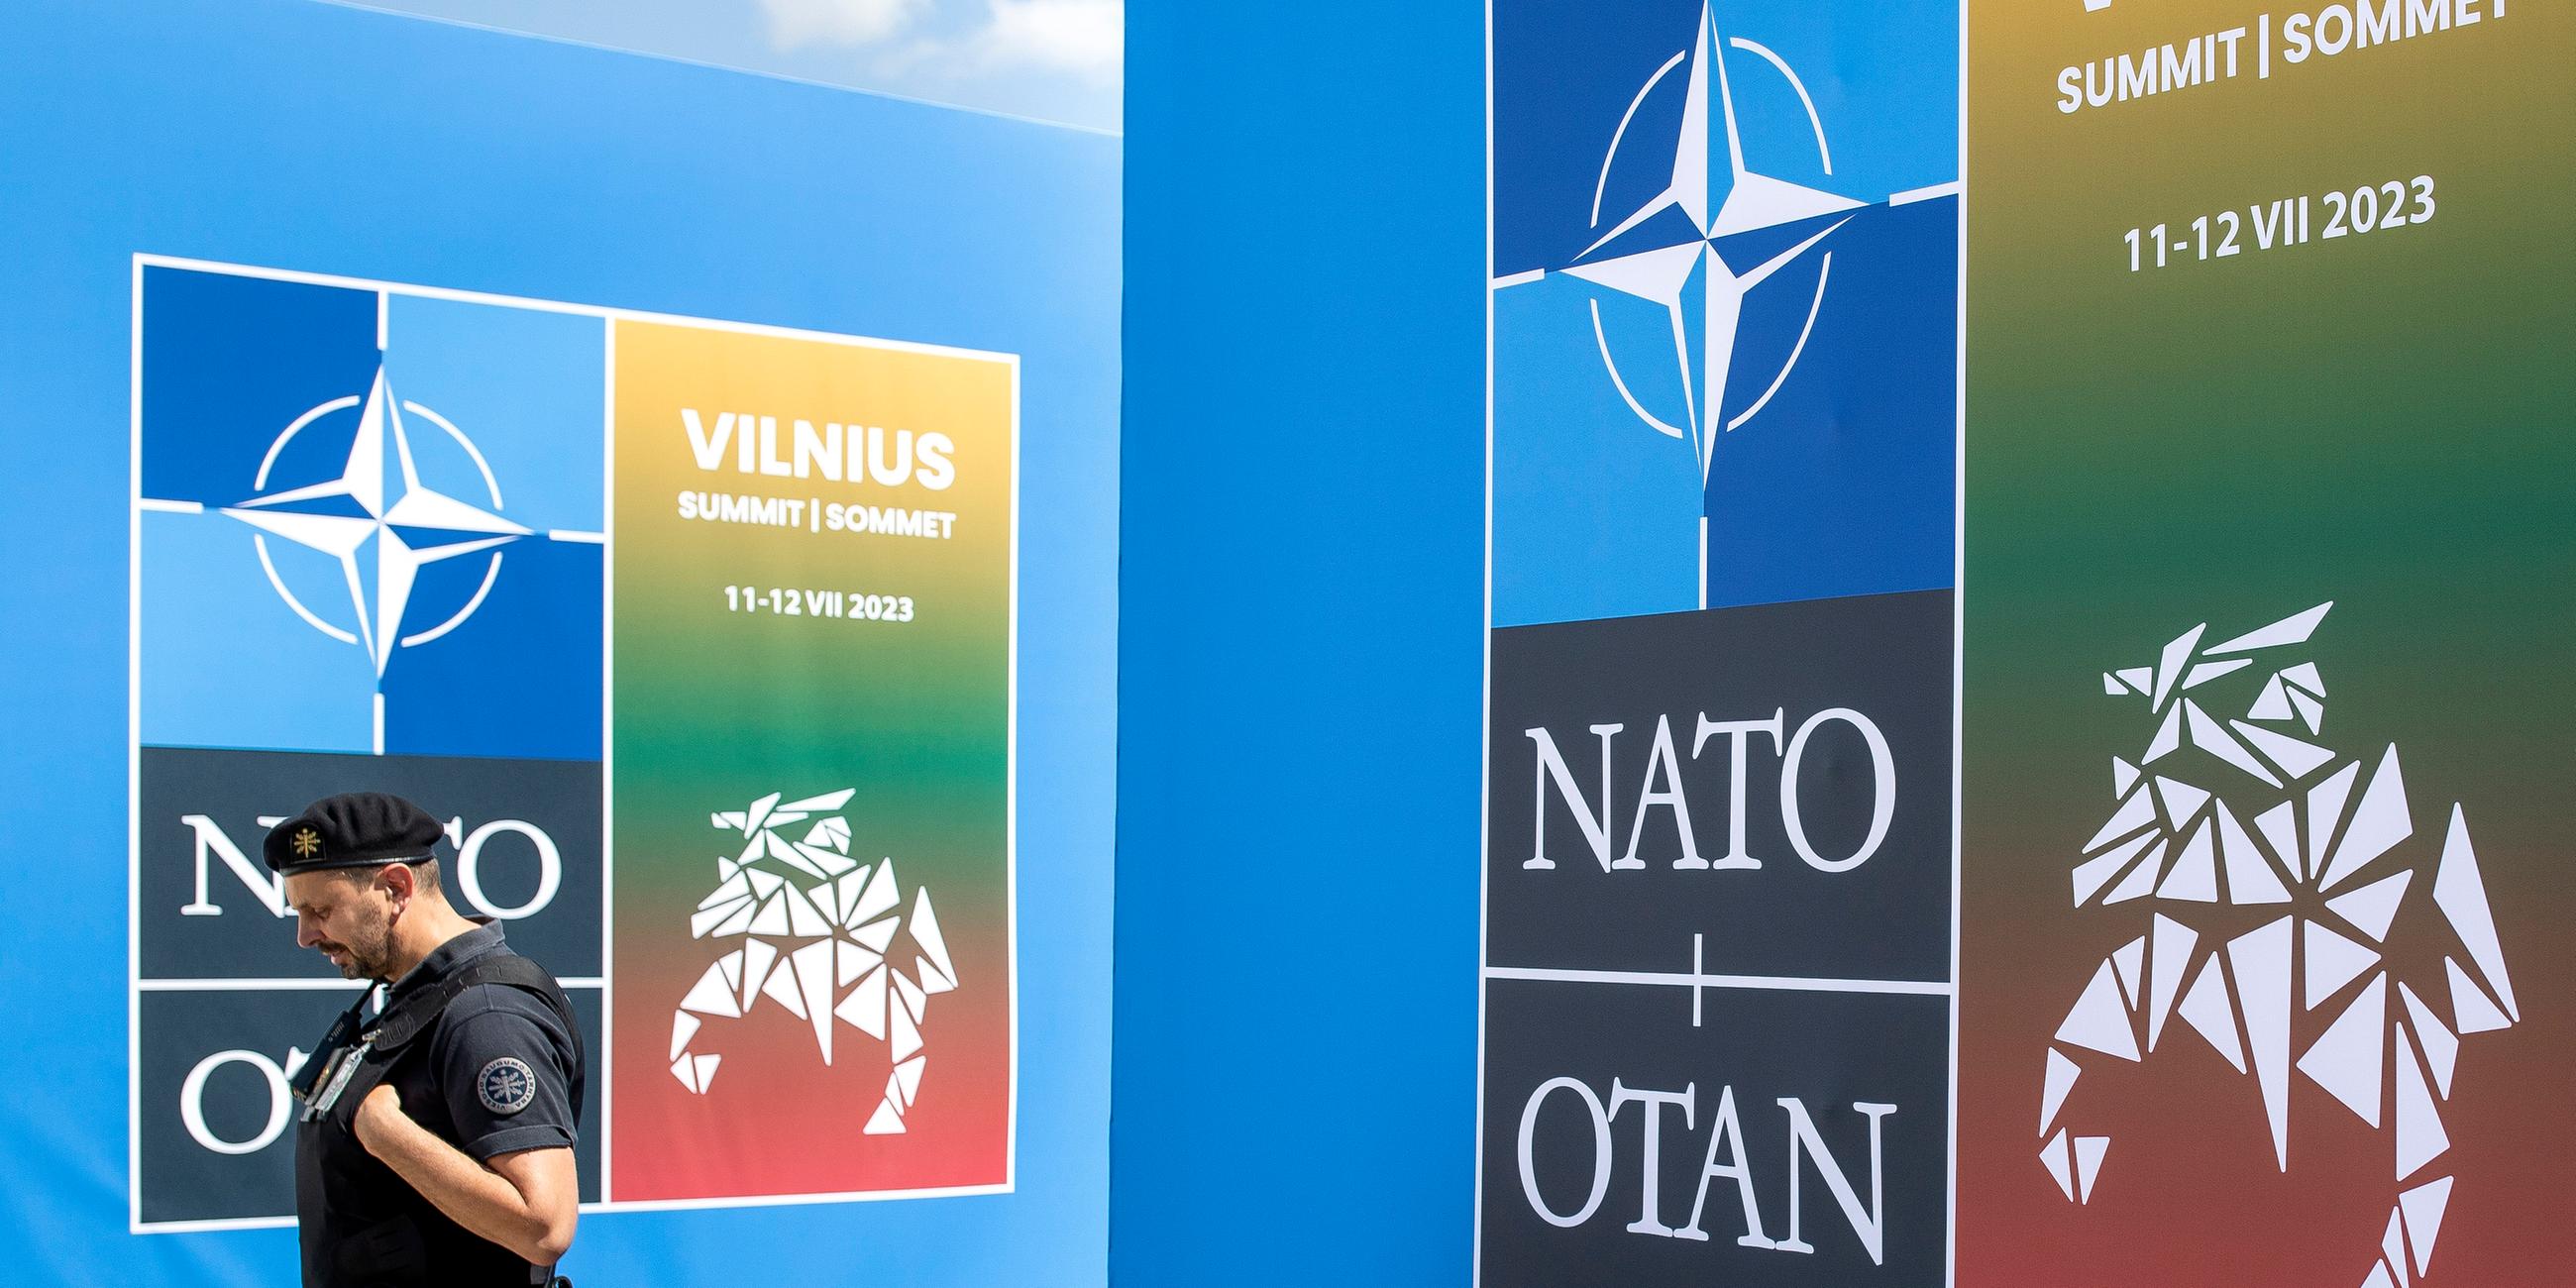 Ein Security-Mann läuft vor dem Banner des Nato-Gipfels in Vilnius.